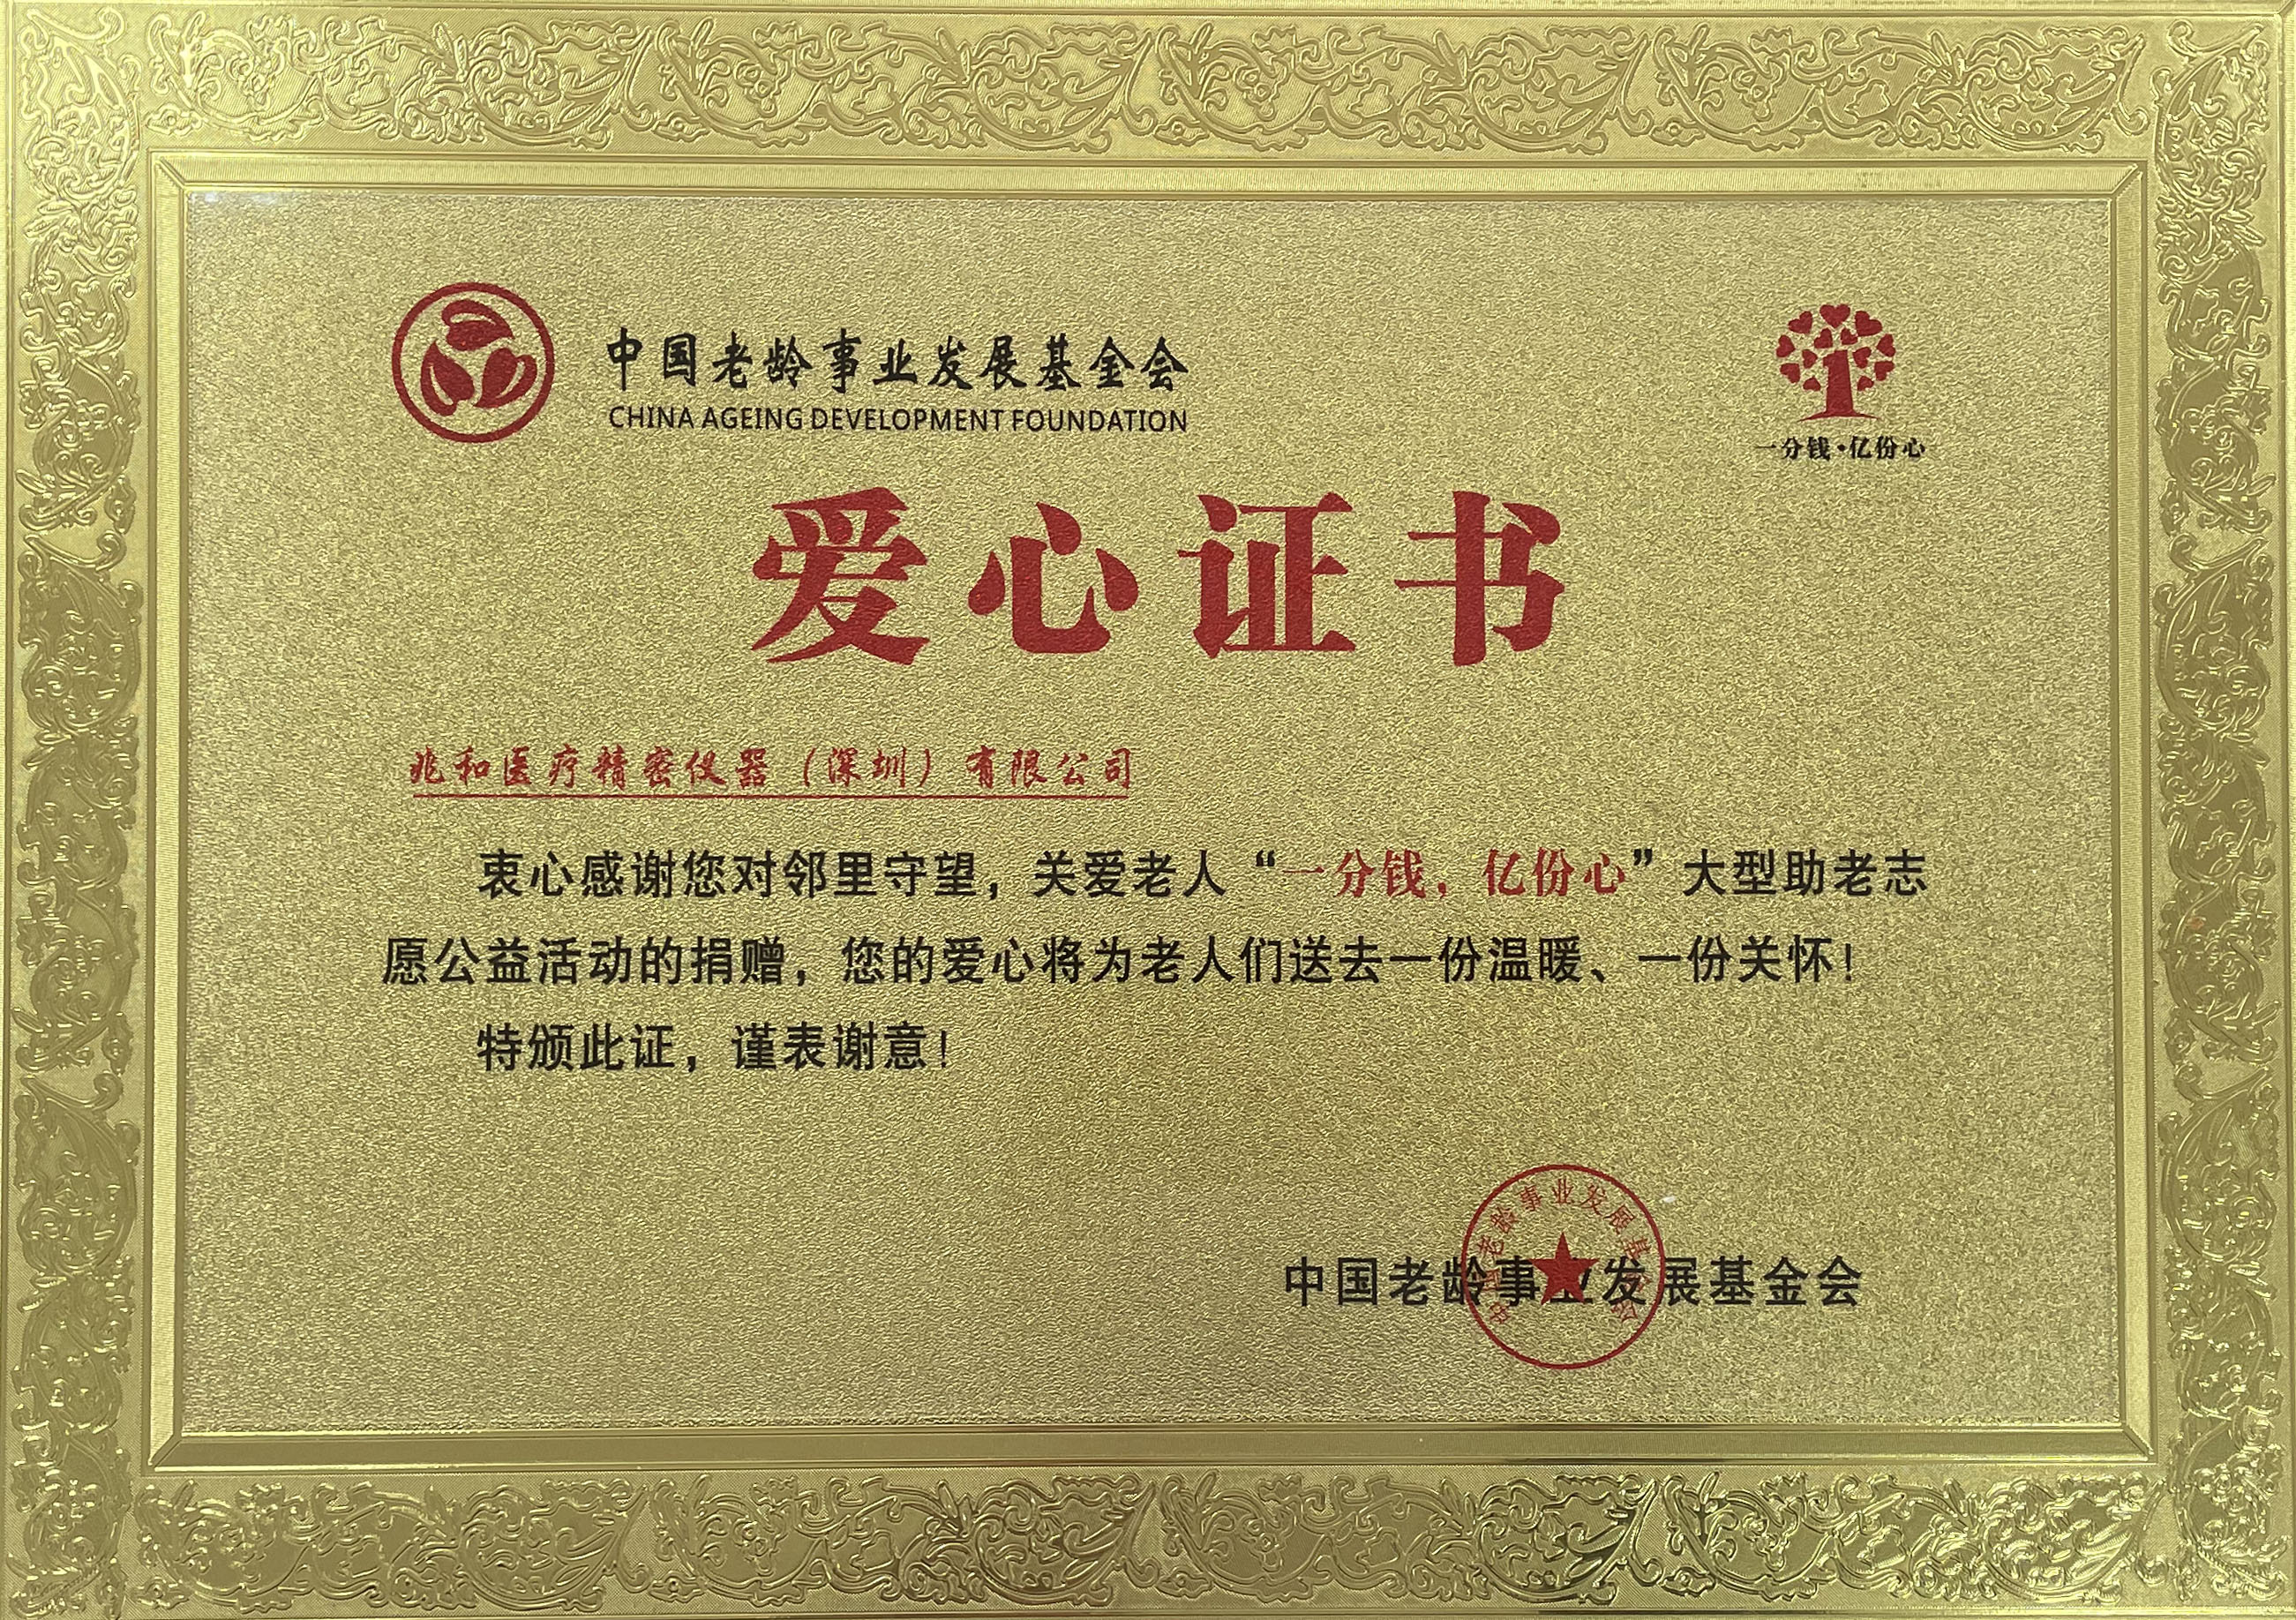 中国老龄事业基金会会员单位